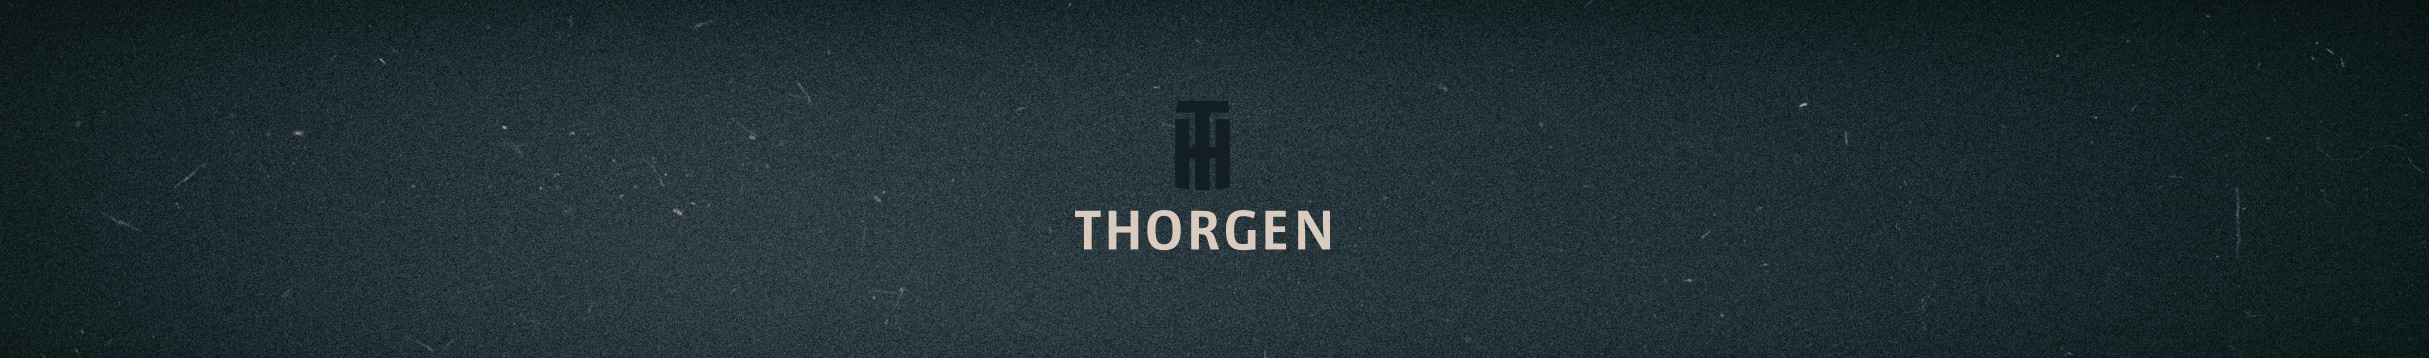 Thorgen Bloch's profile banner